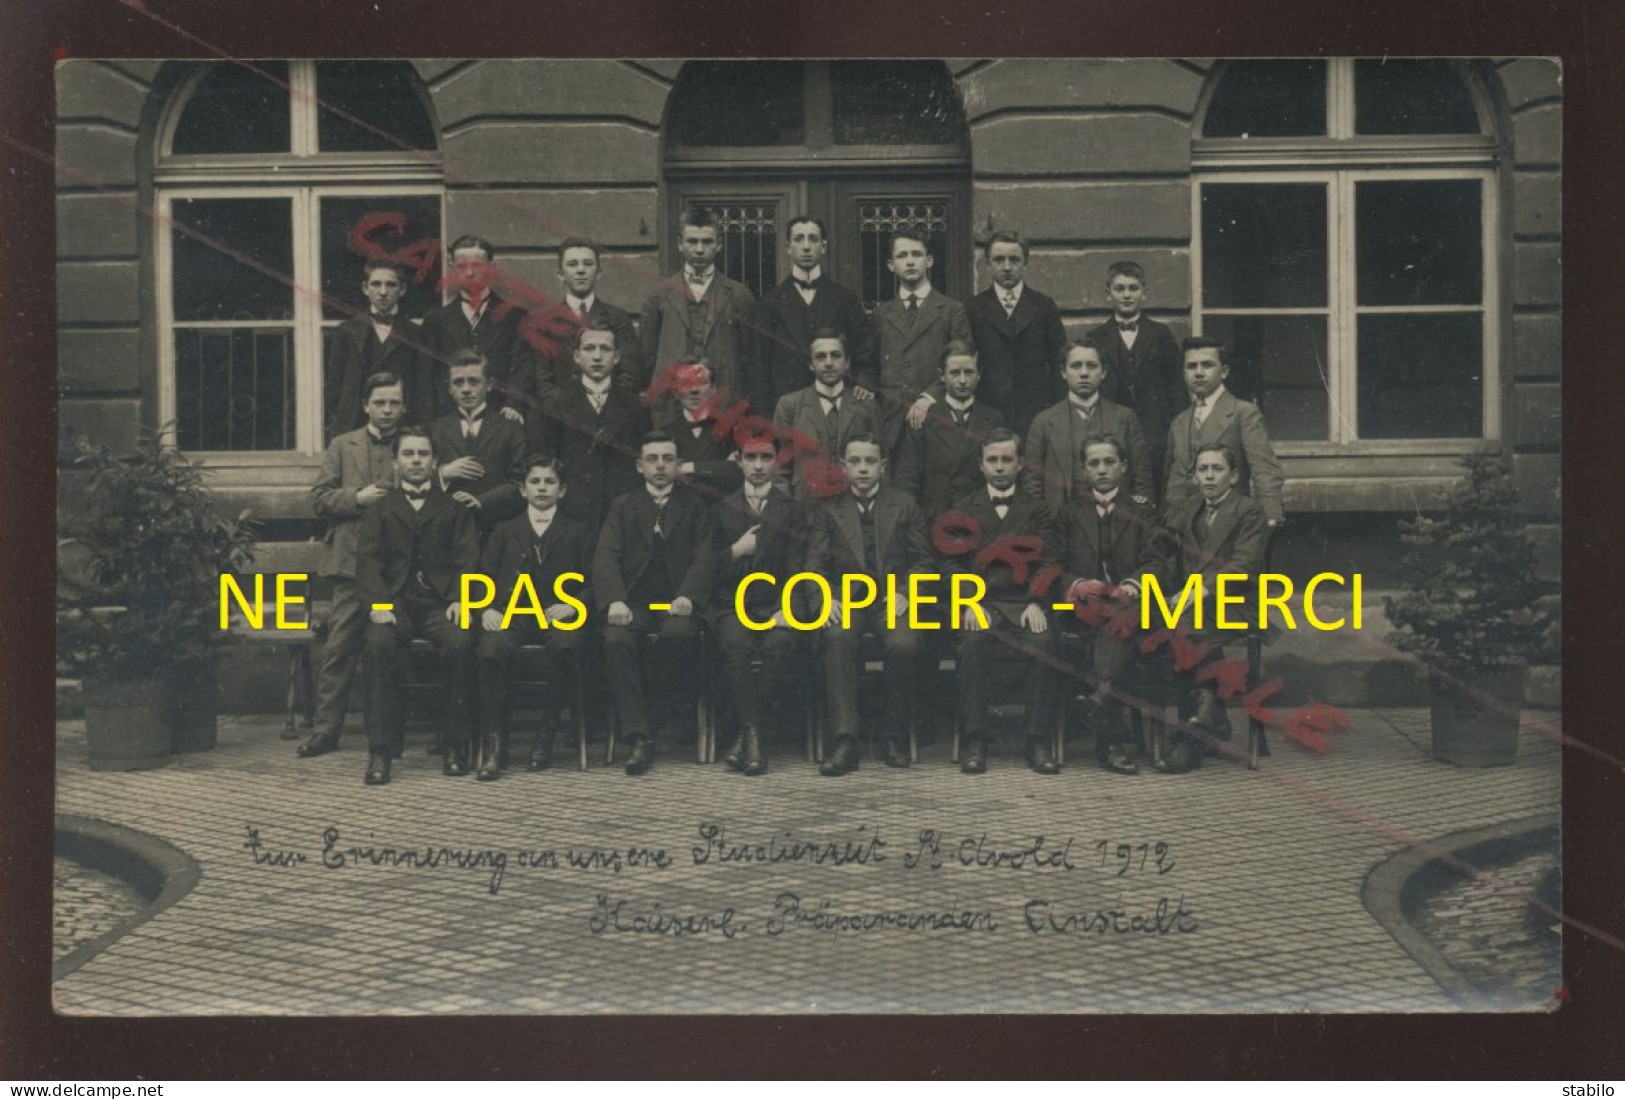 57 - ST-AVOLD - ZUM ERRINERUNG AN USERE STUDIENZEIT - 1912 - KAISERL - PRAPARANDEN ANSTALT - CARTE PHOTO ORIGINALE - Saint-Avold